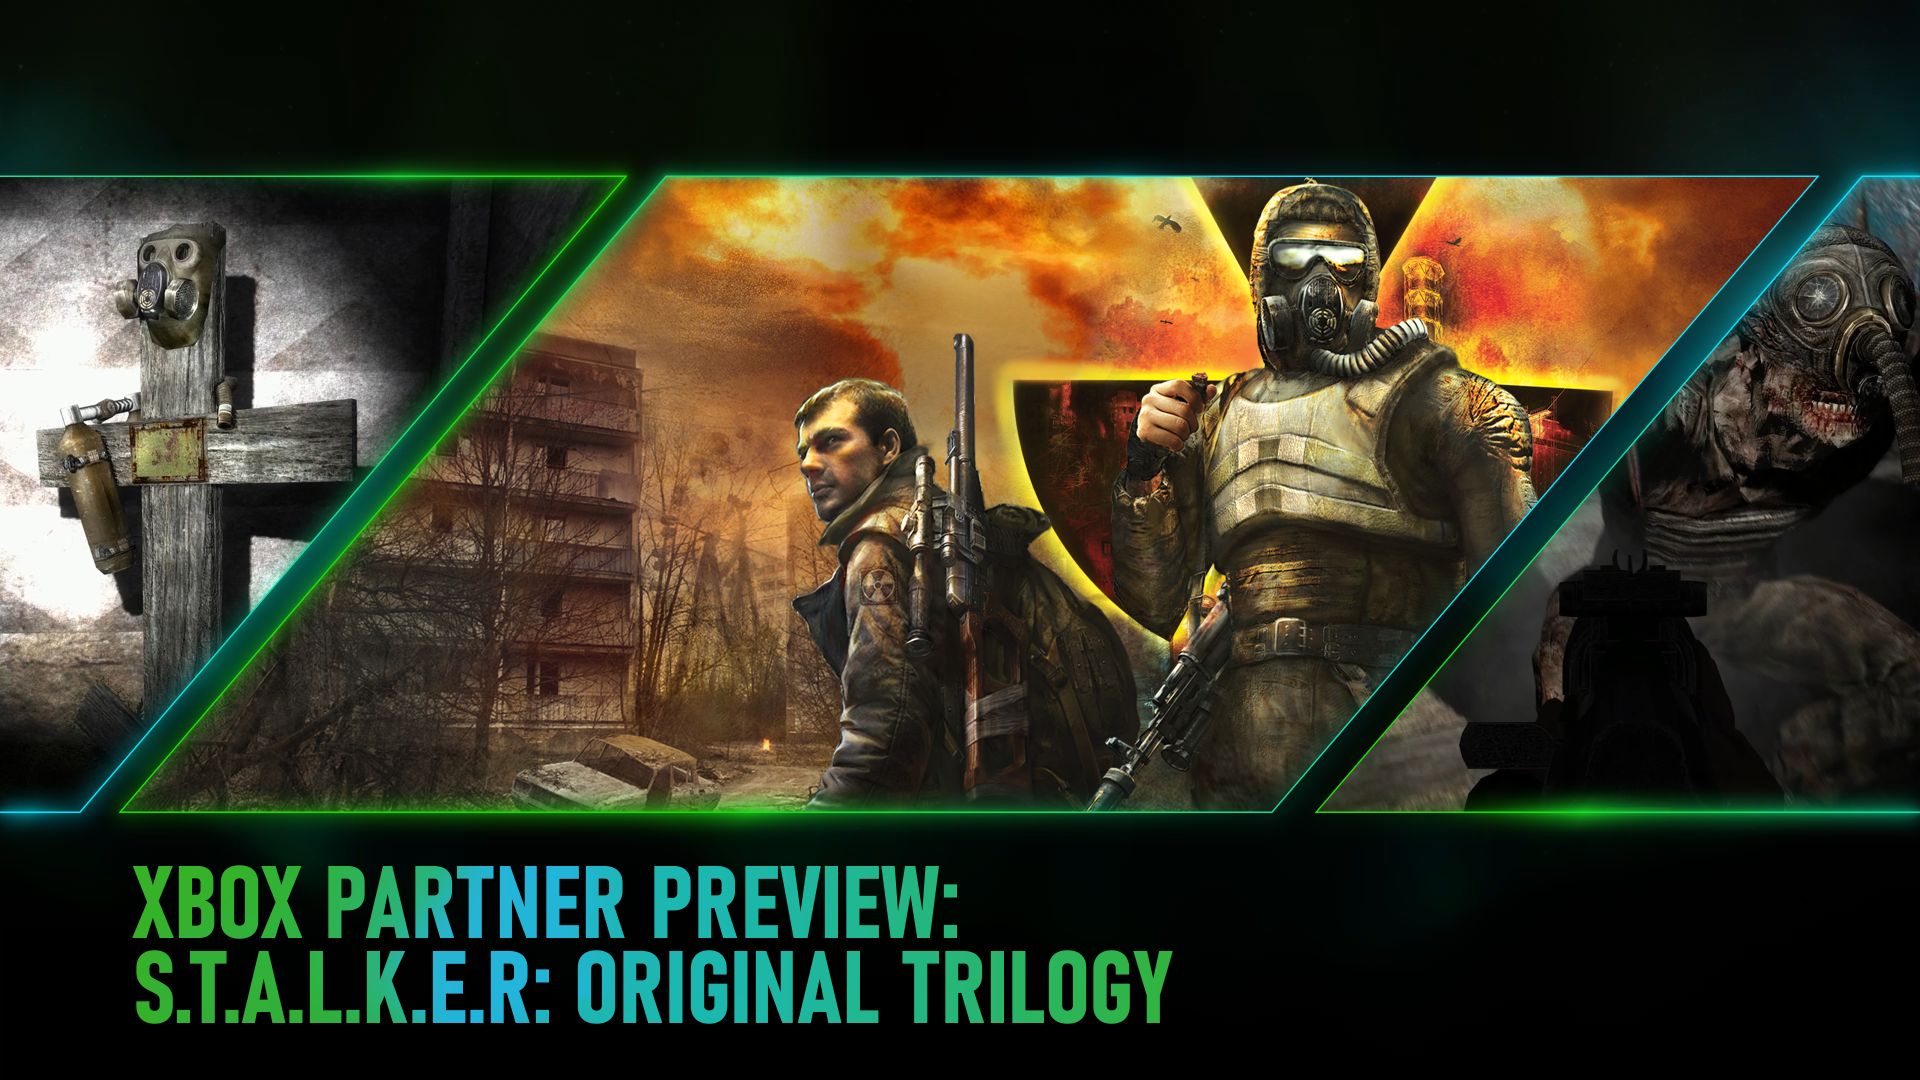 Video For Xbox Partner Preview: Wie die legendäre S.T.A.L.K.E.R.-Trilogie endlich ihren Weg auf Xbox fand